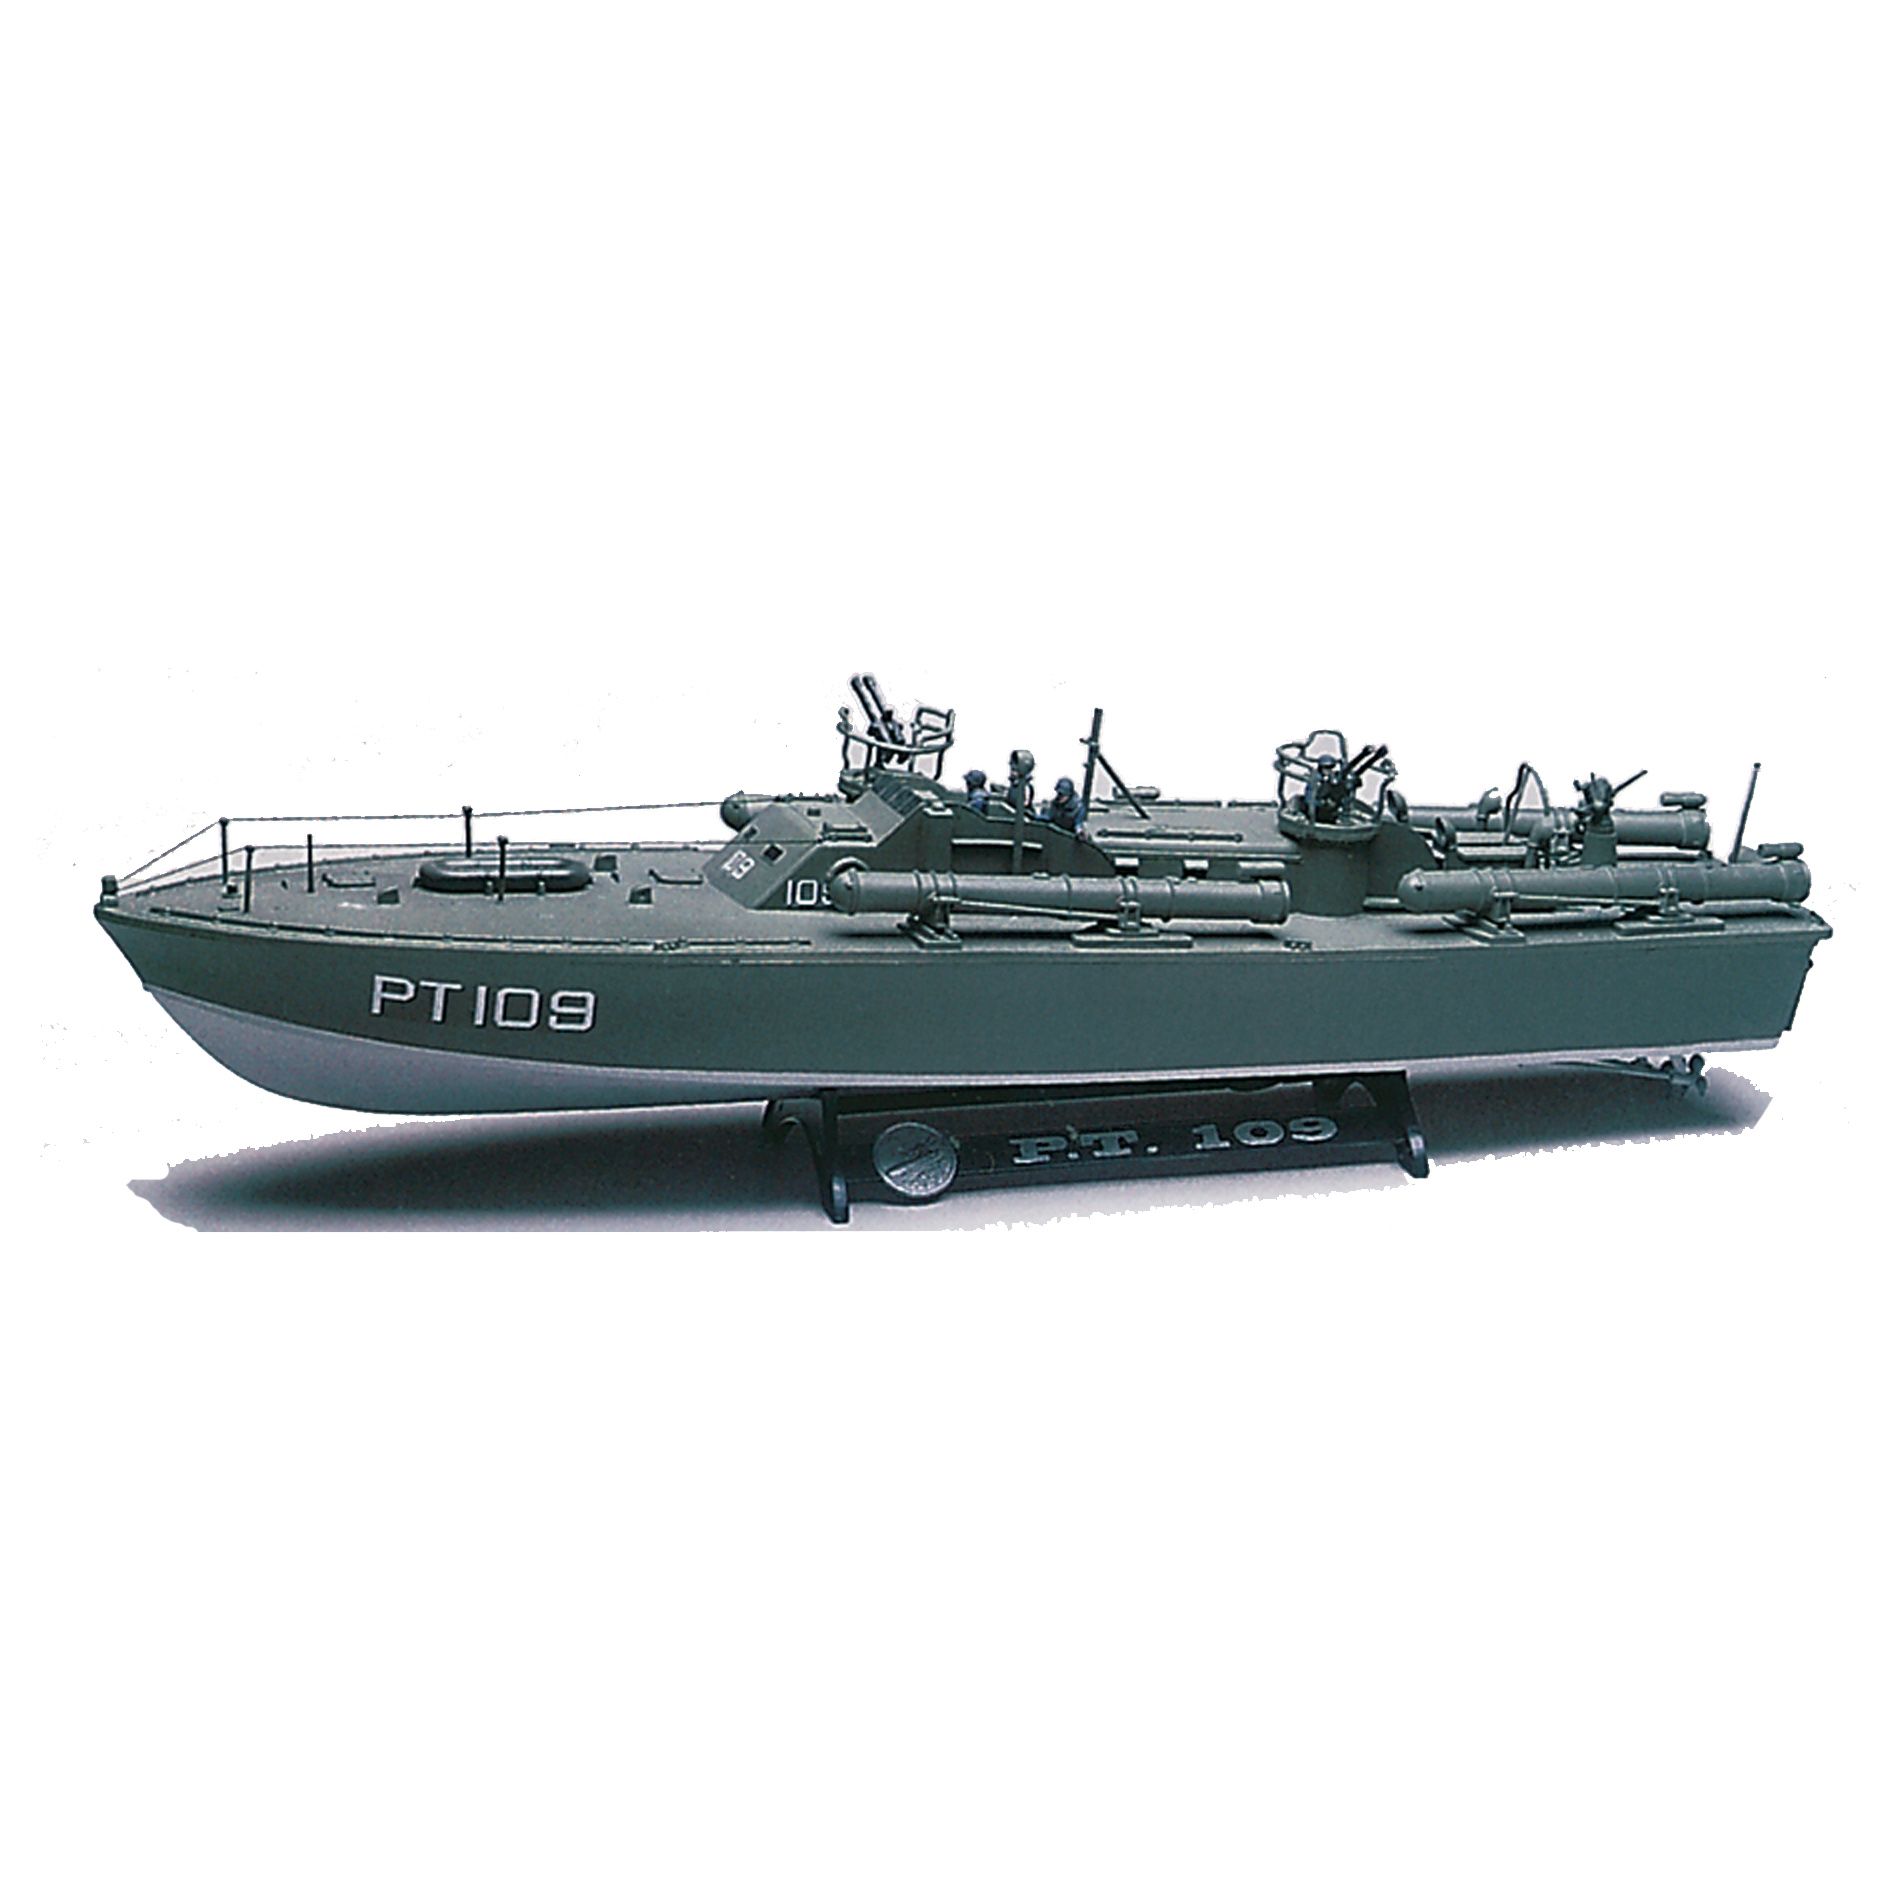 1:72 Scale PT109 Boat Model Kit